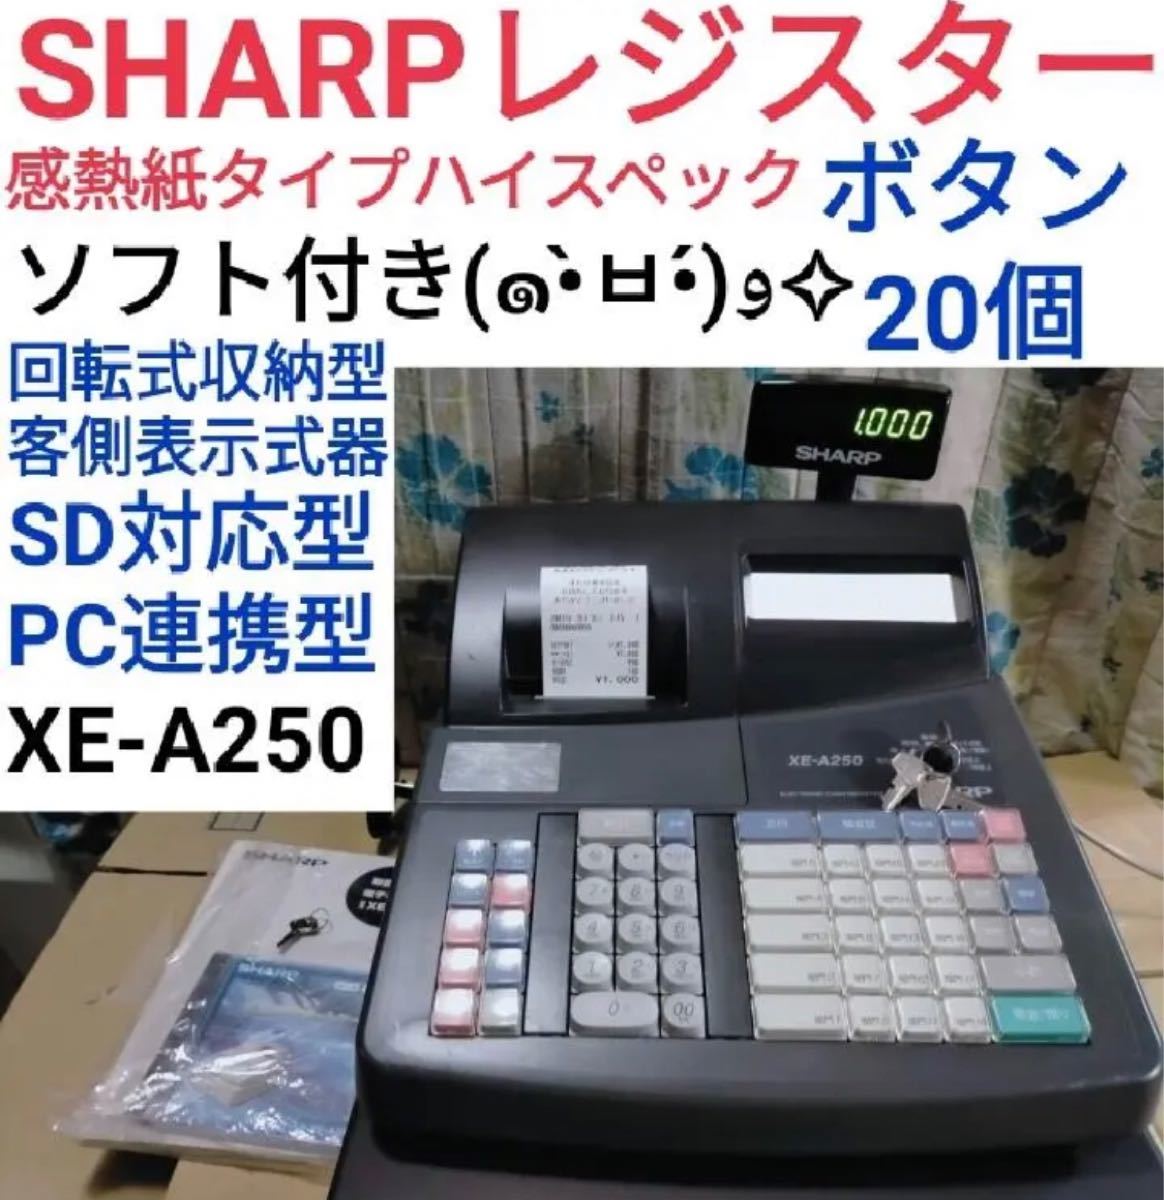 SHARP レジスターXE-A280BT PC連携 スキャナ付き 9027 www